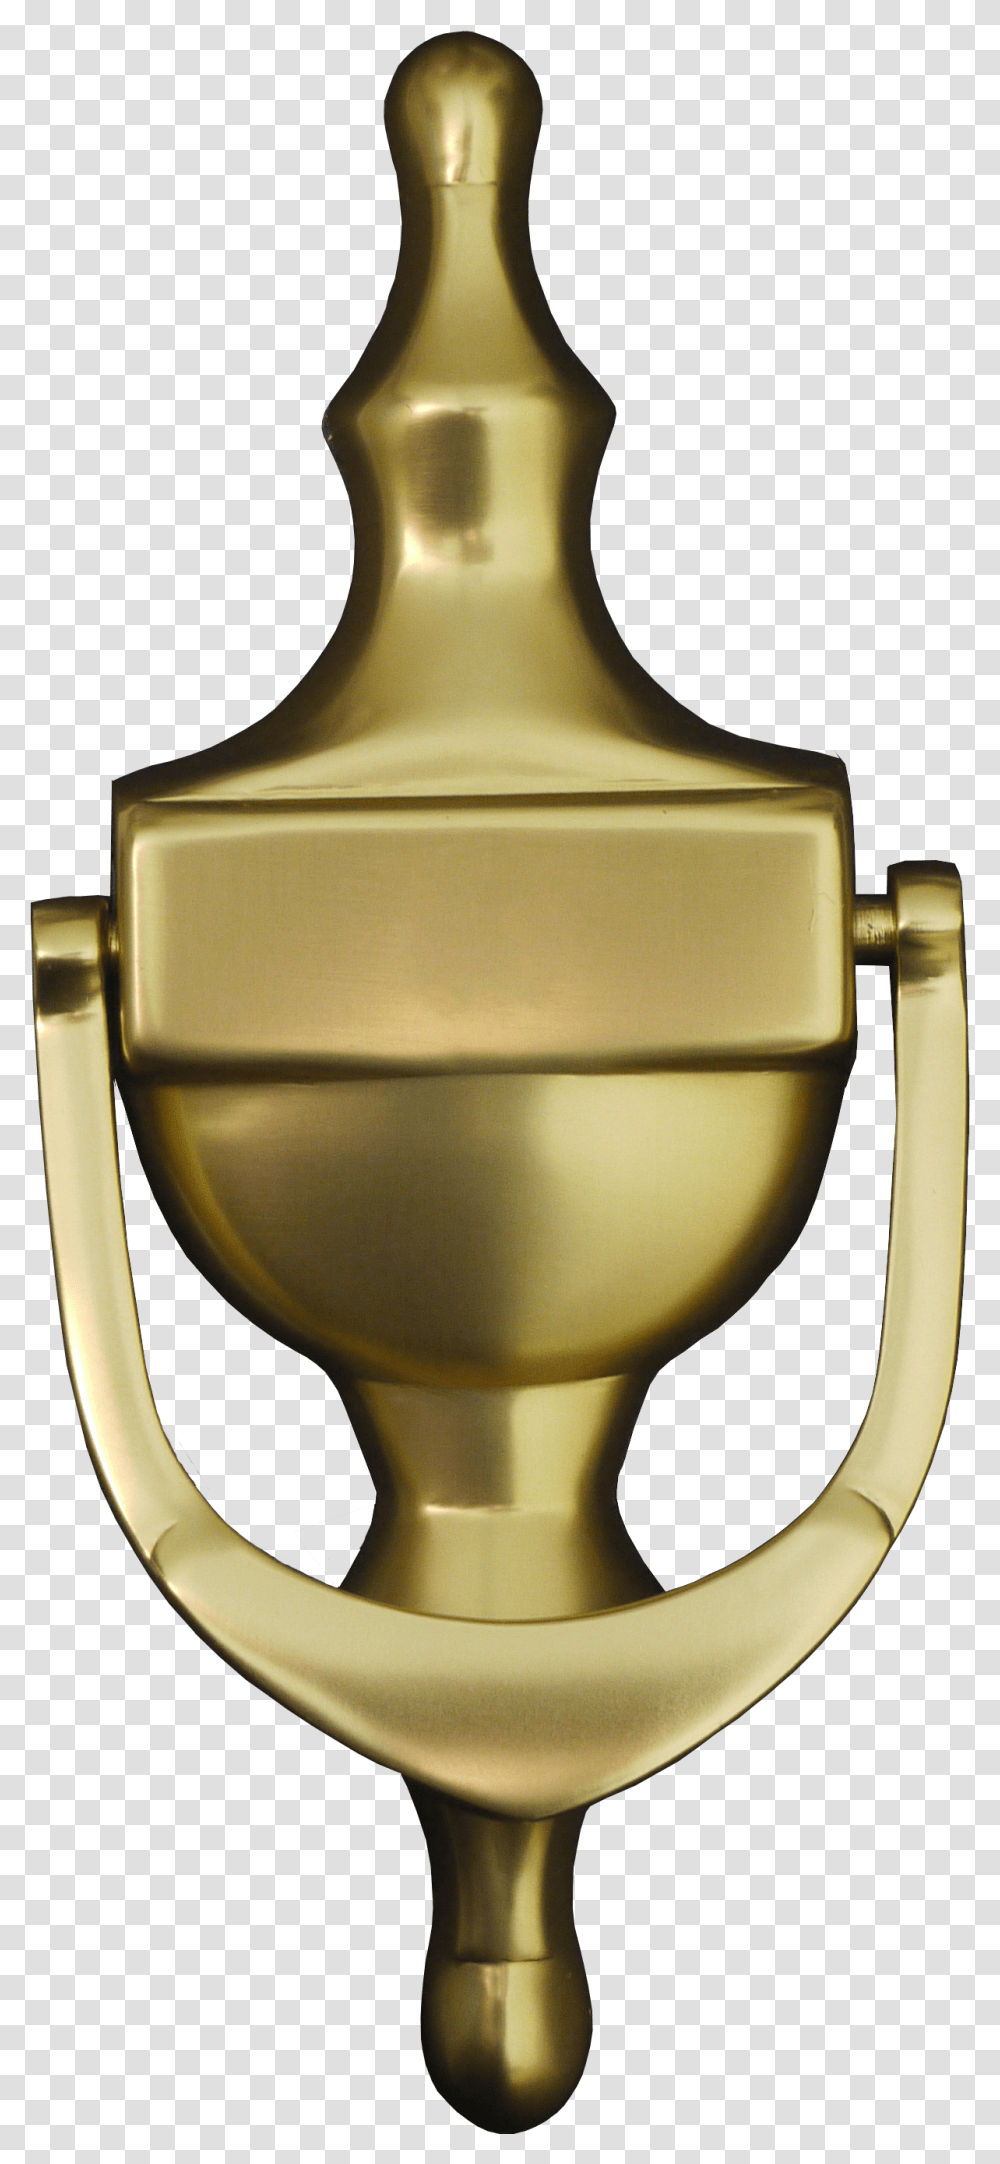 Brass, Trophy, Lamp, Gold, Gold Medal Transparent Png